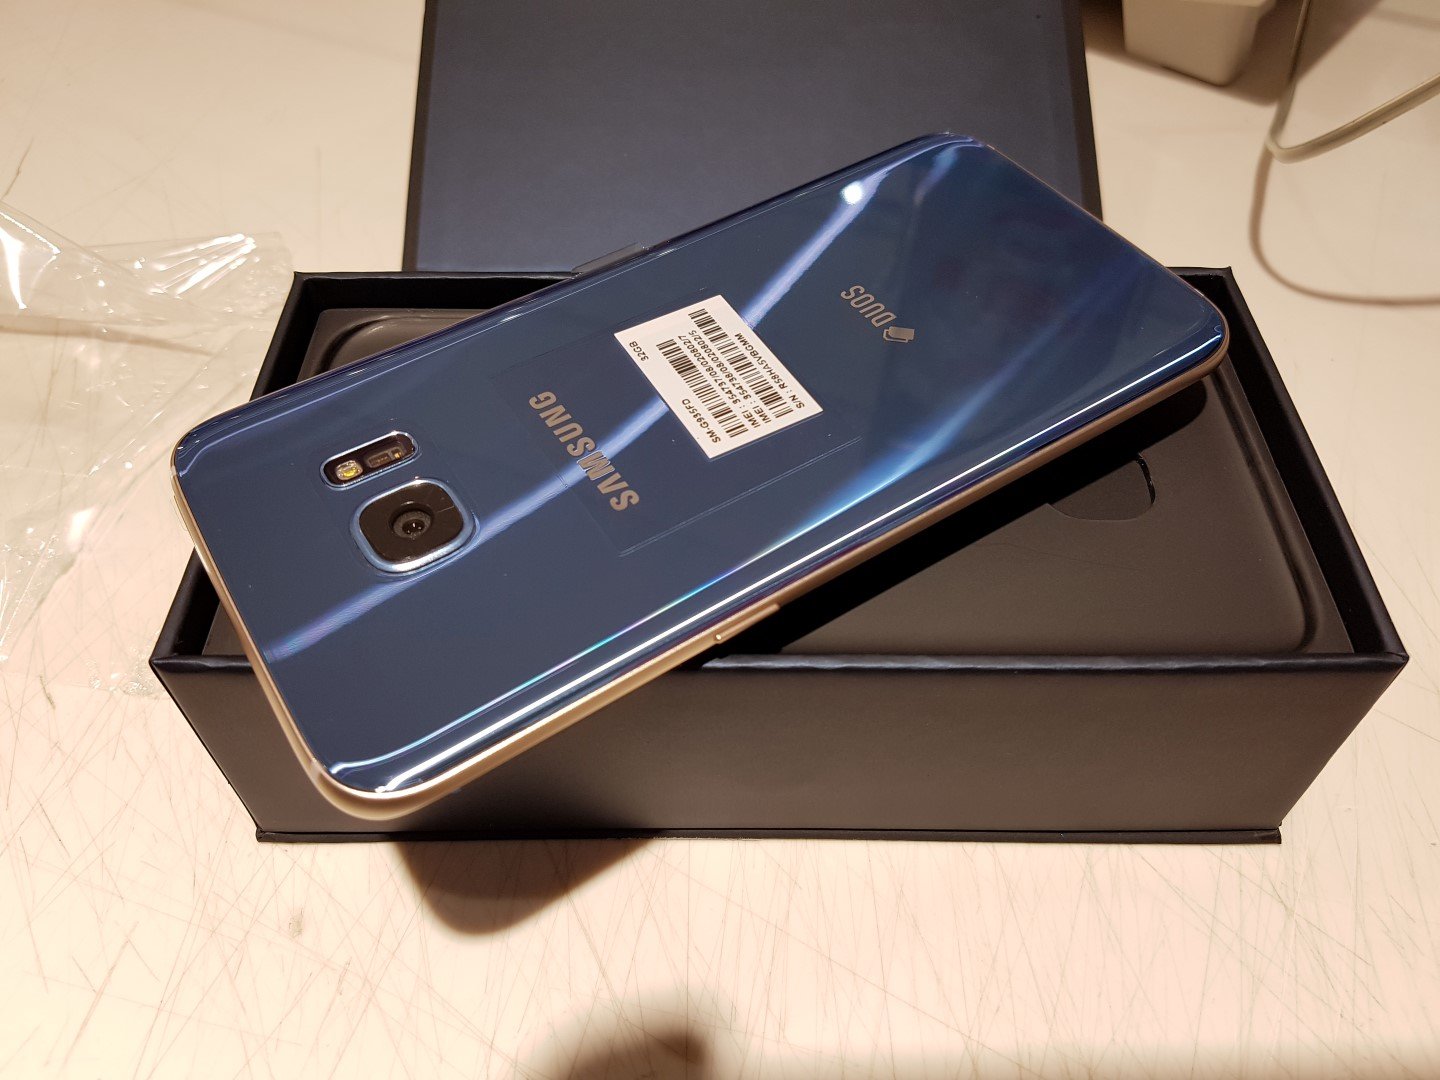 Samsung Galaxy S7 Edge G935FD Coral Blue